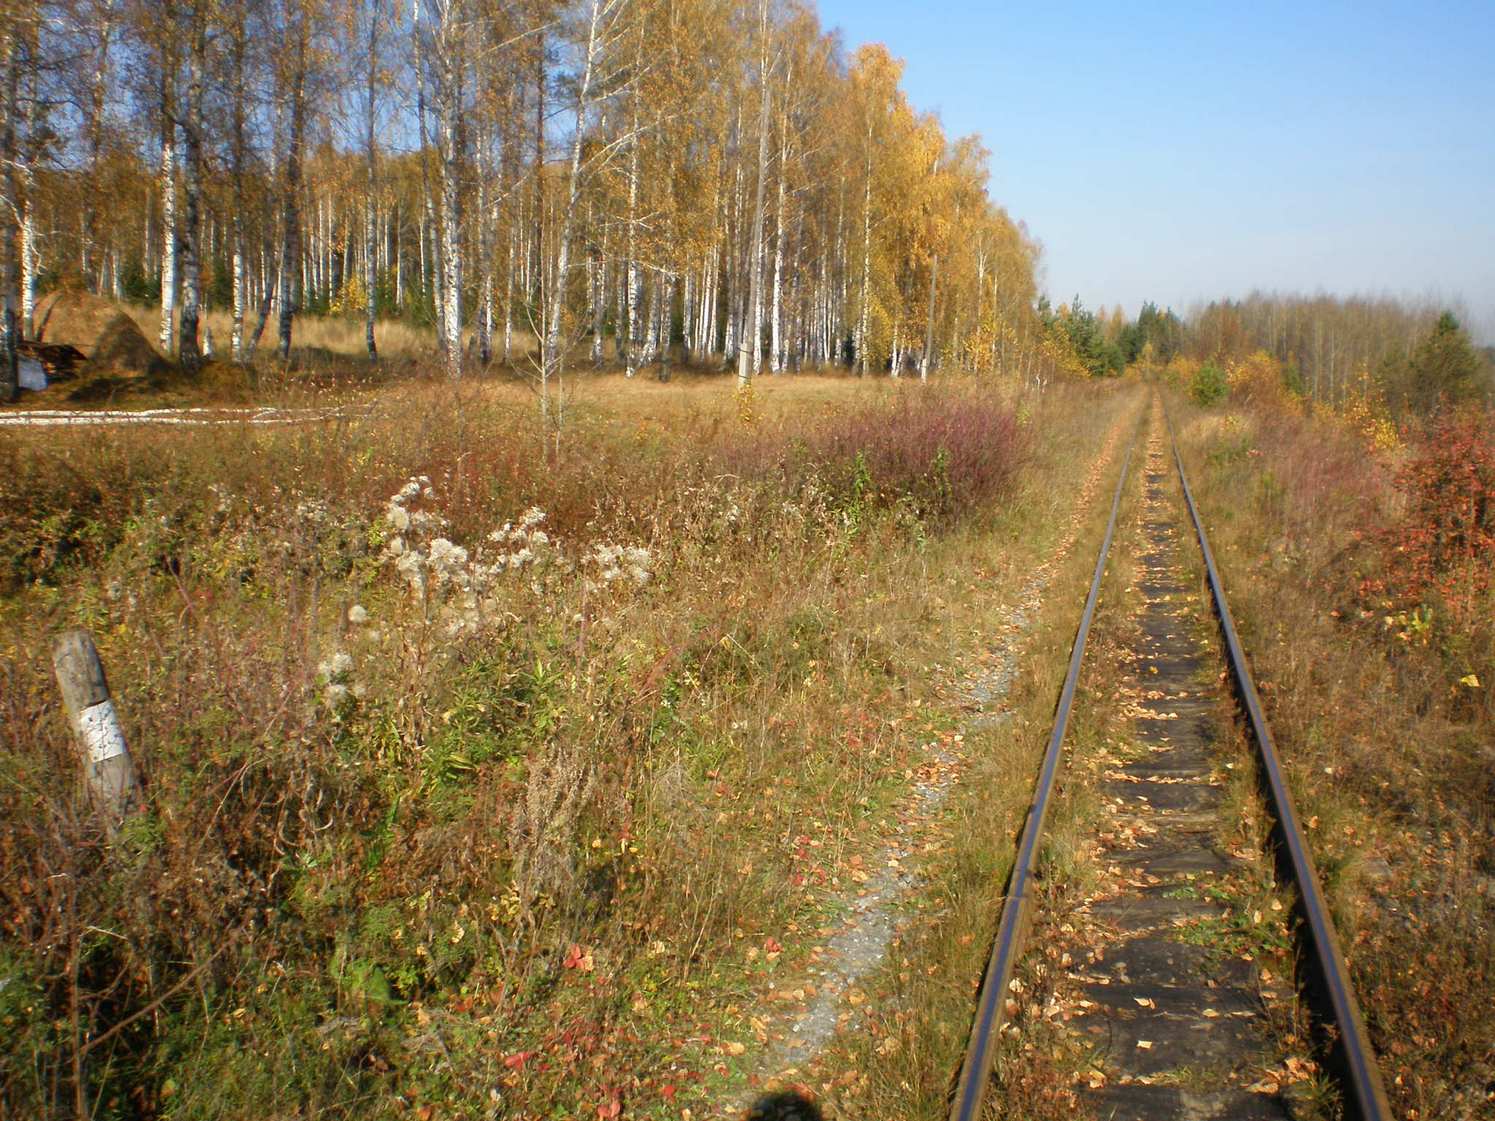 Висимо-Уткинская узкоколейная железная дорога  — фотографии, сделанные в 2007 году (часть 26)